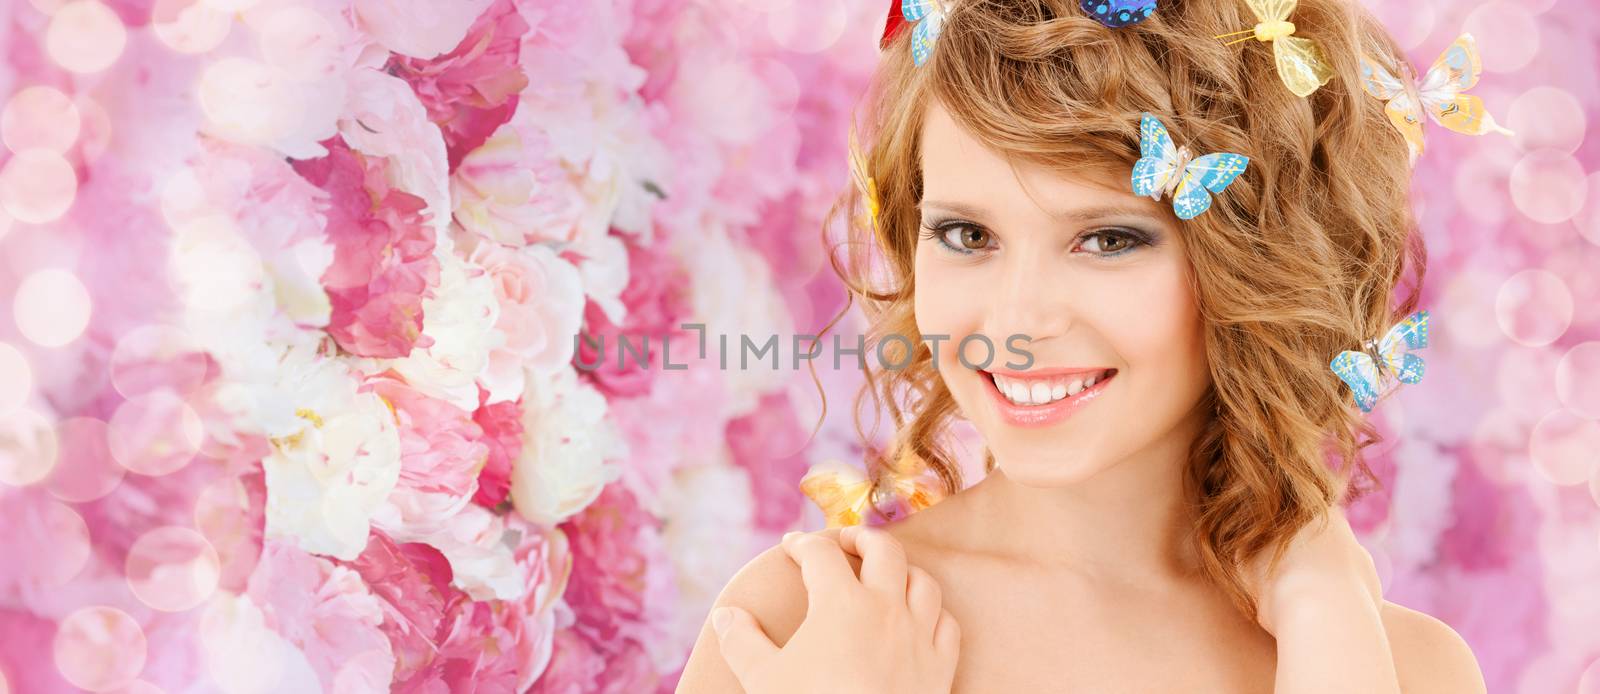 happy teenage girl with butterflies in hair by dolgachov